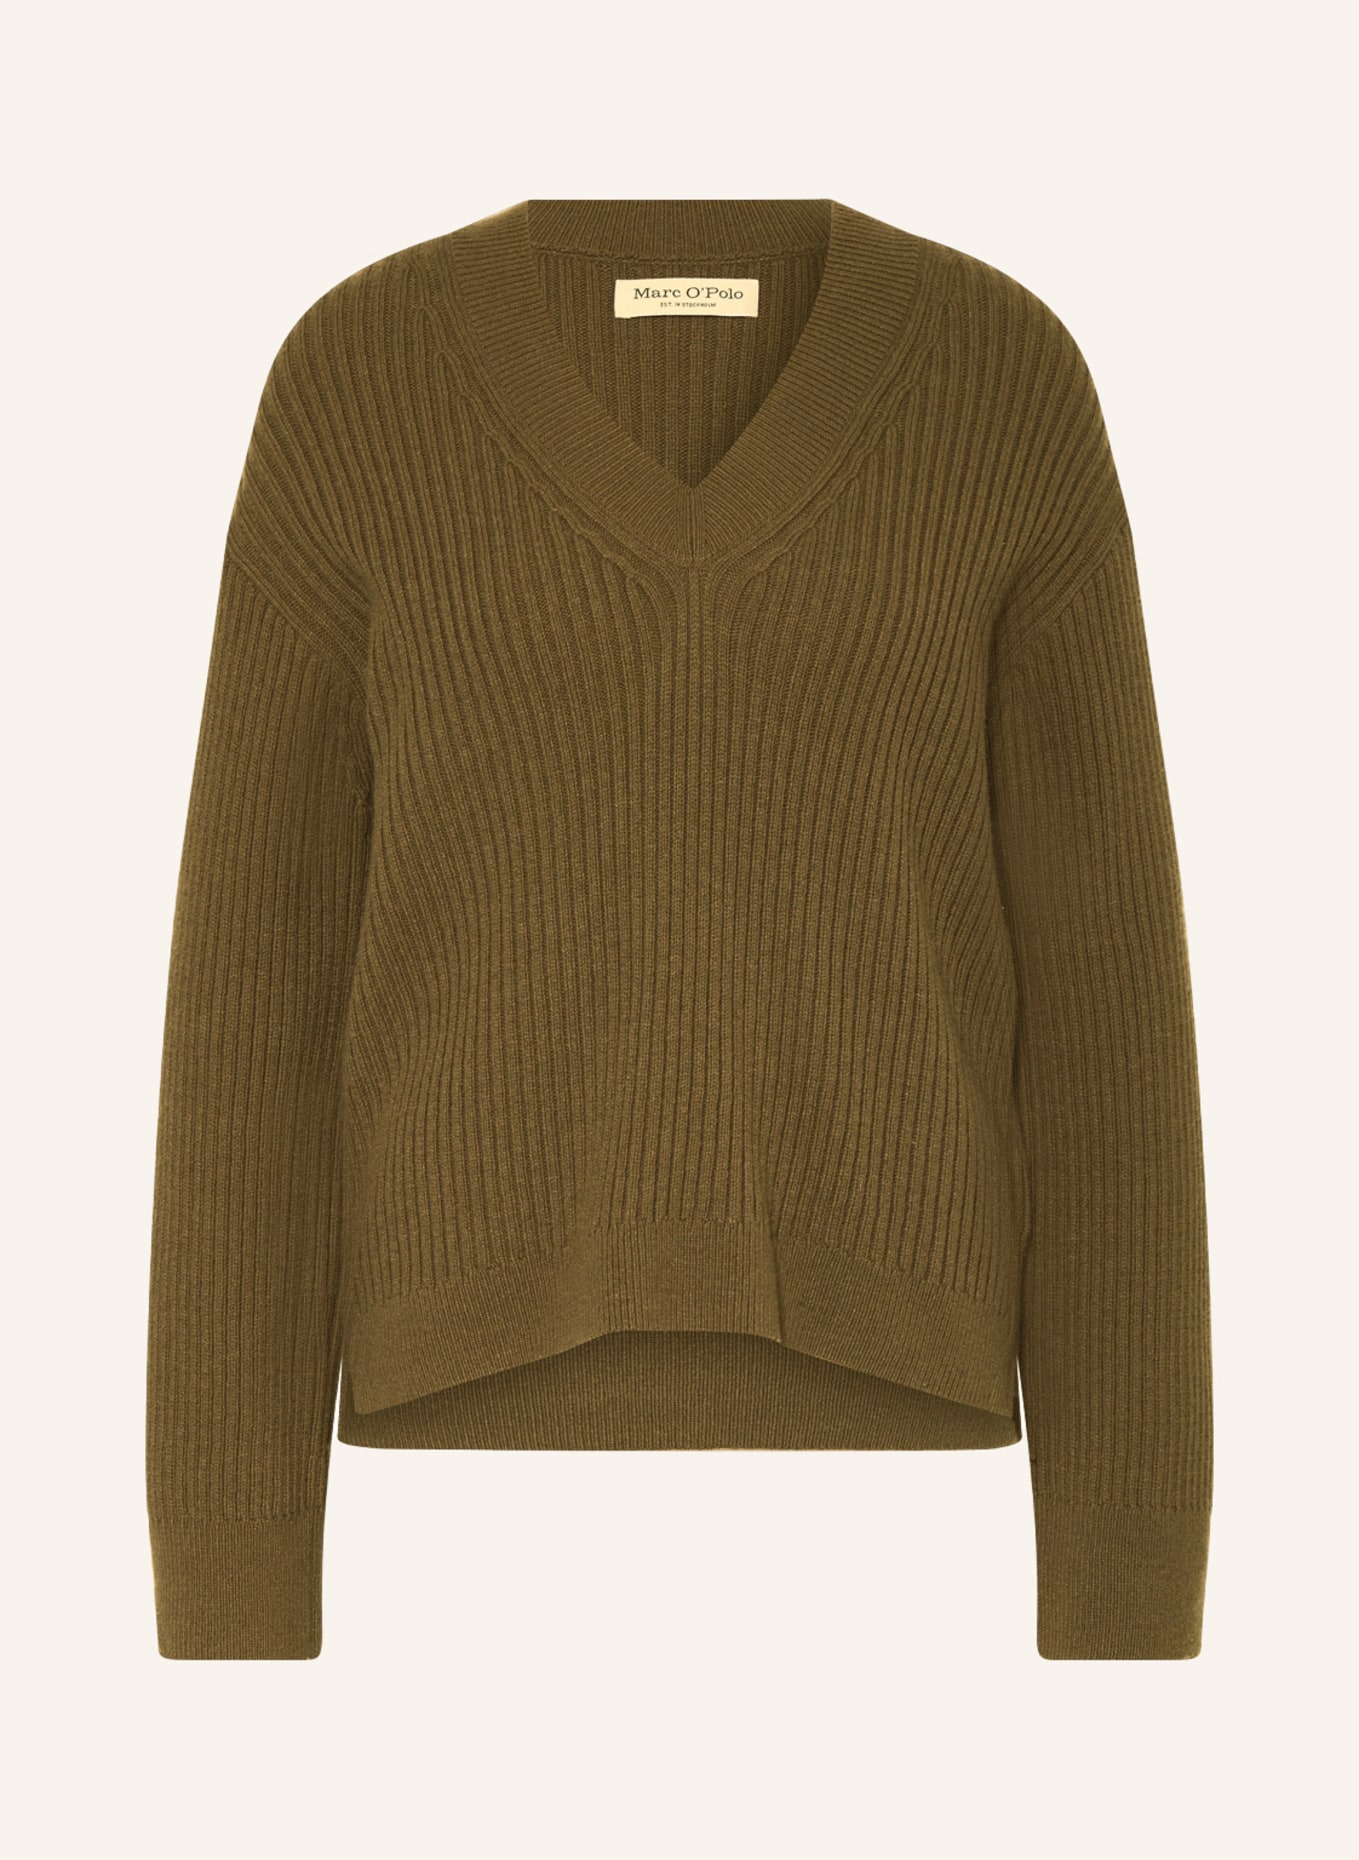 Marc O'Polo Sweater, Color: KHAKI (Image 1)